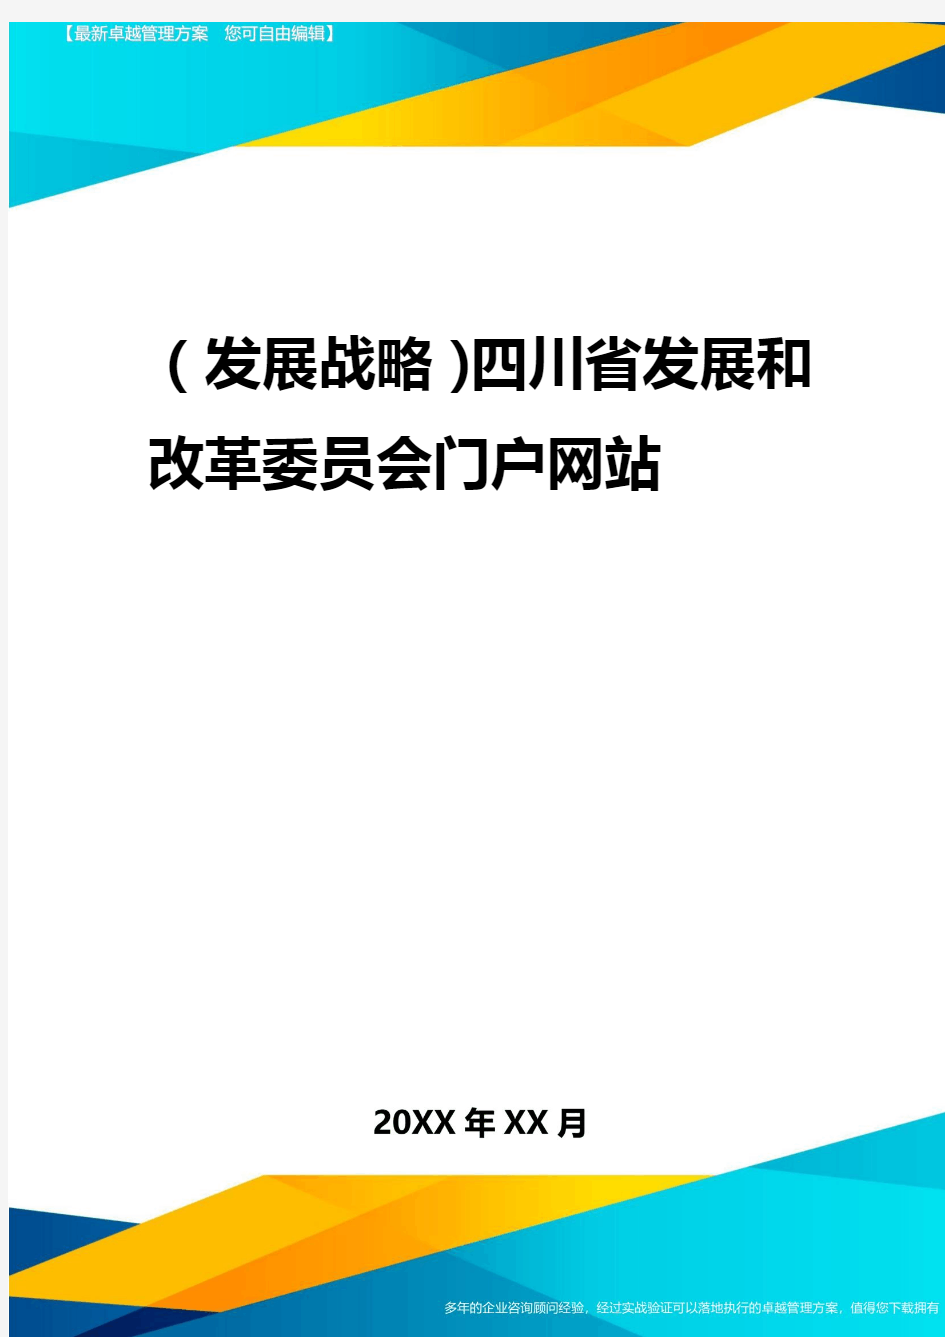 2020年(发展战略)四川省发展和改革委员会门户网站